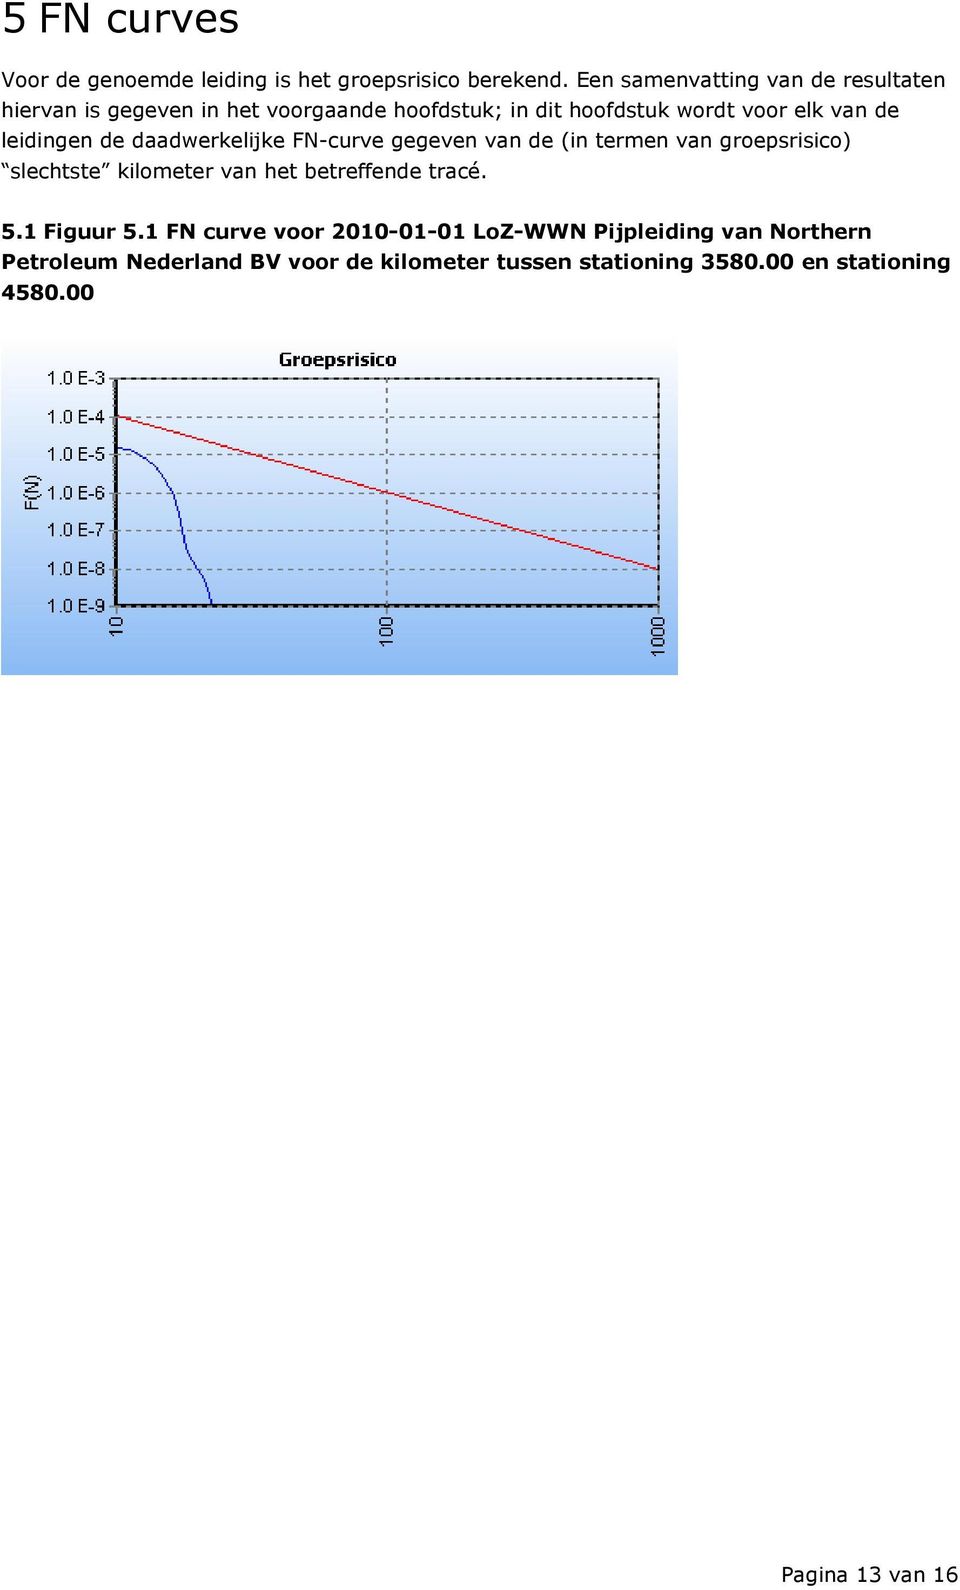 leidingen de daadwerkelijke FN-curve gegeven van de (in termen van groepsrisico) slechtste kilometer van het betreffende